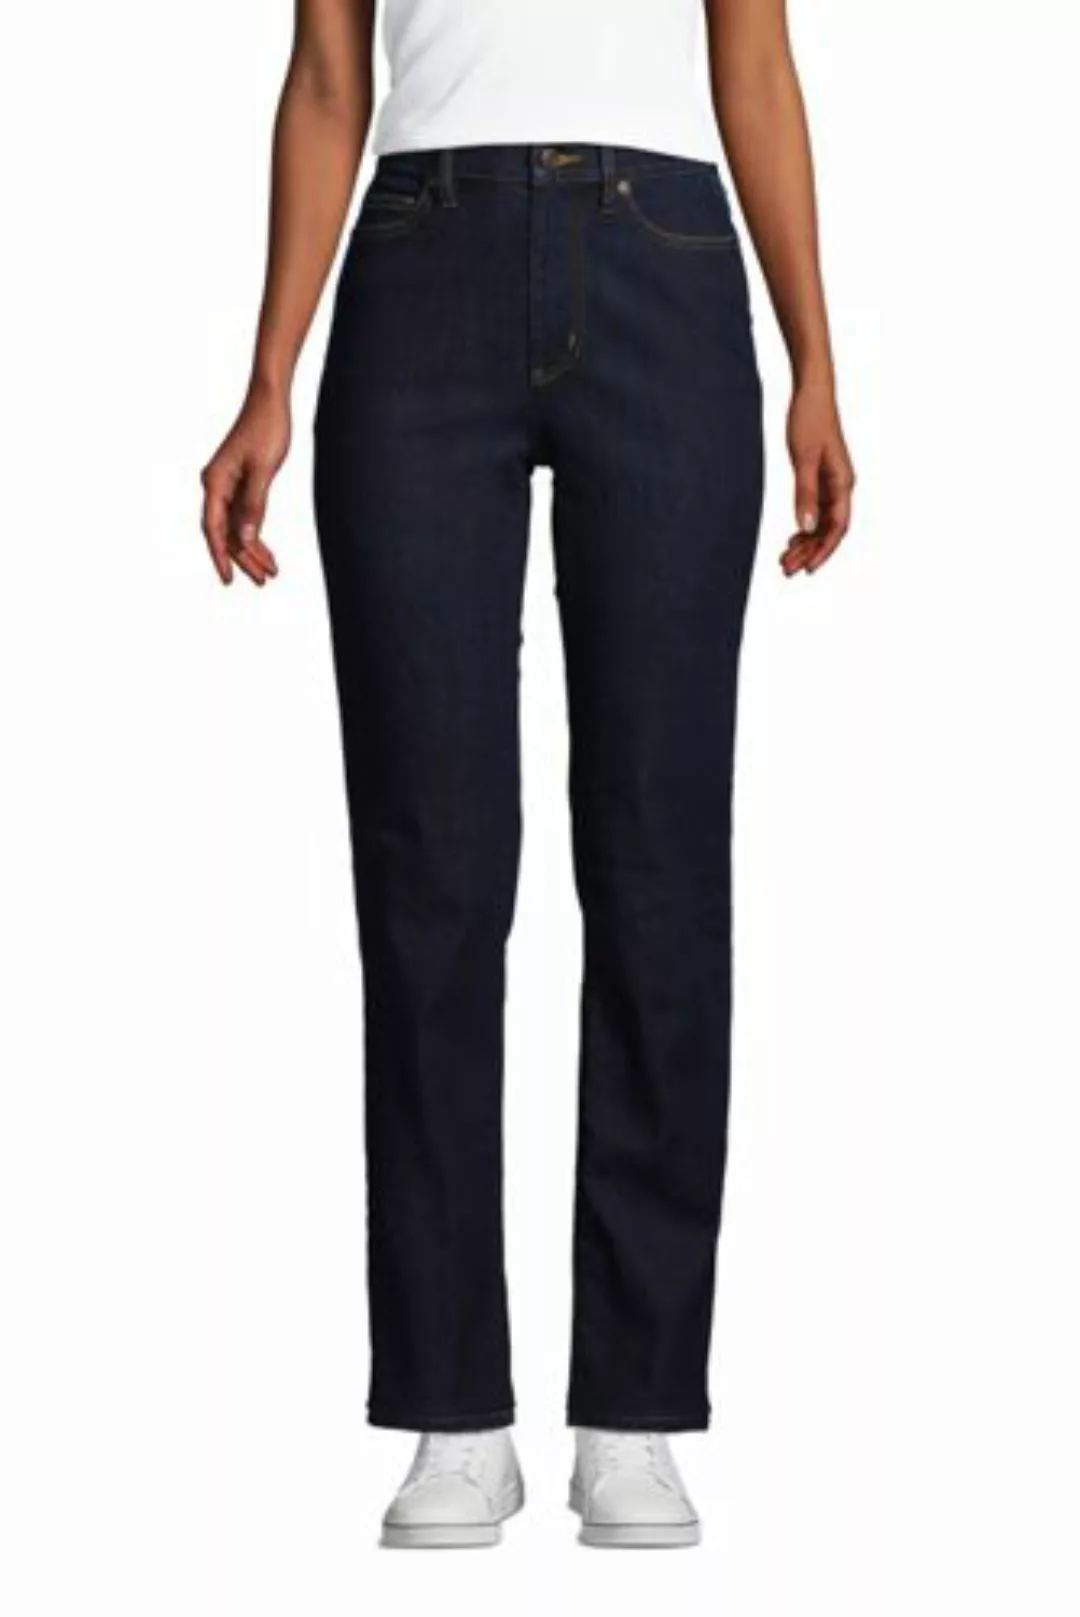 Straight Fit Öko Jeans High Waist, Damen, Größe: 38 30 Normal, Blau, Elasth günstig online kaufen